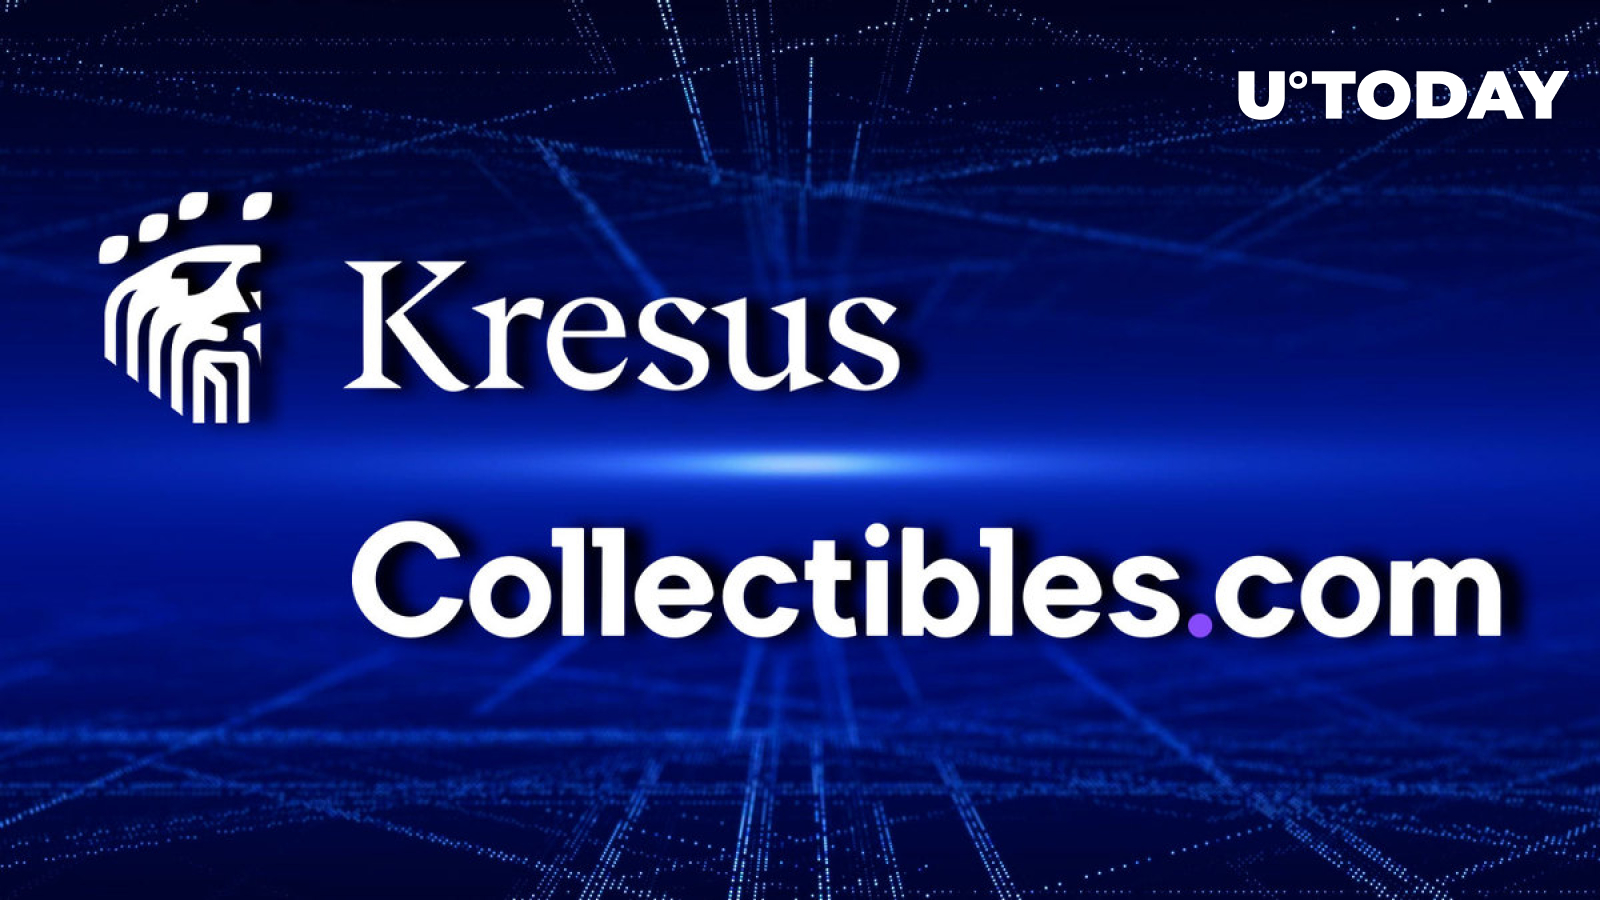 Web3 SuperApp Kresus Teams up with Collectibles.com Community